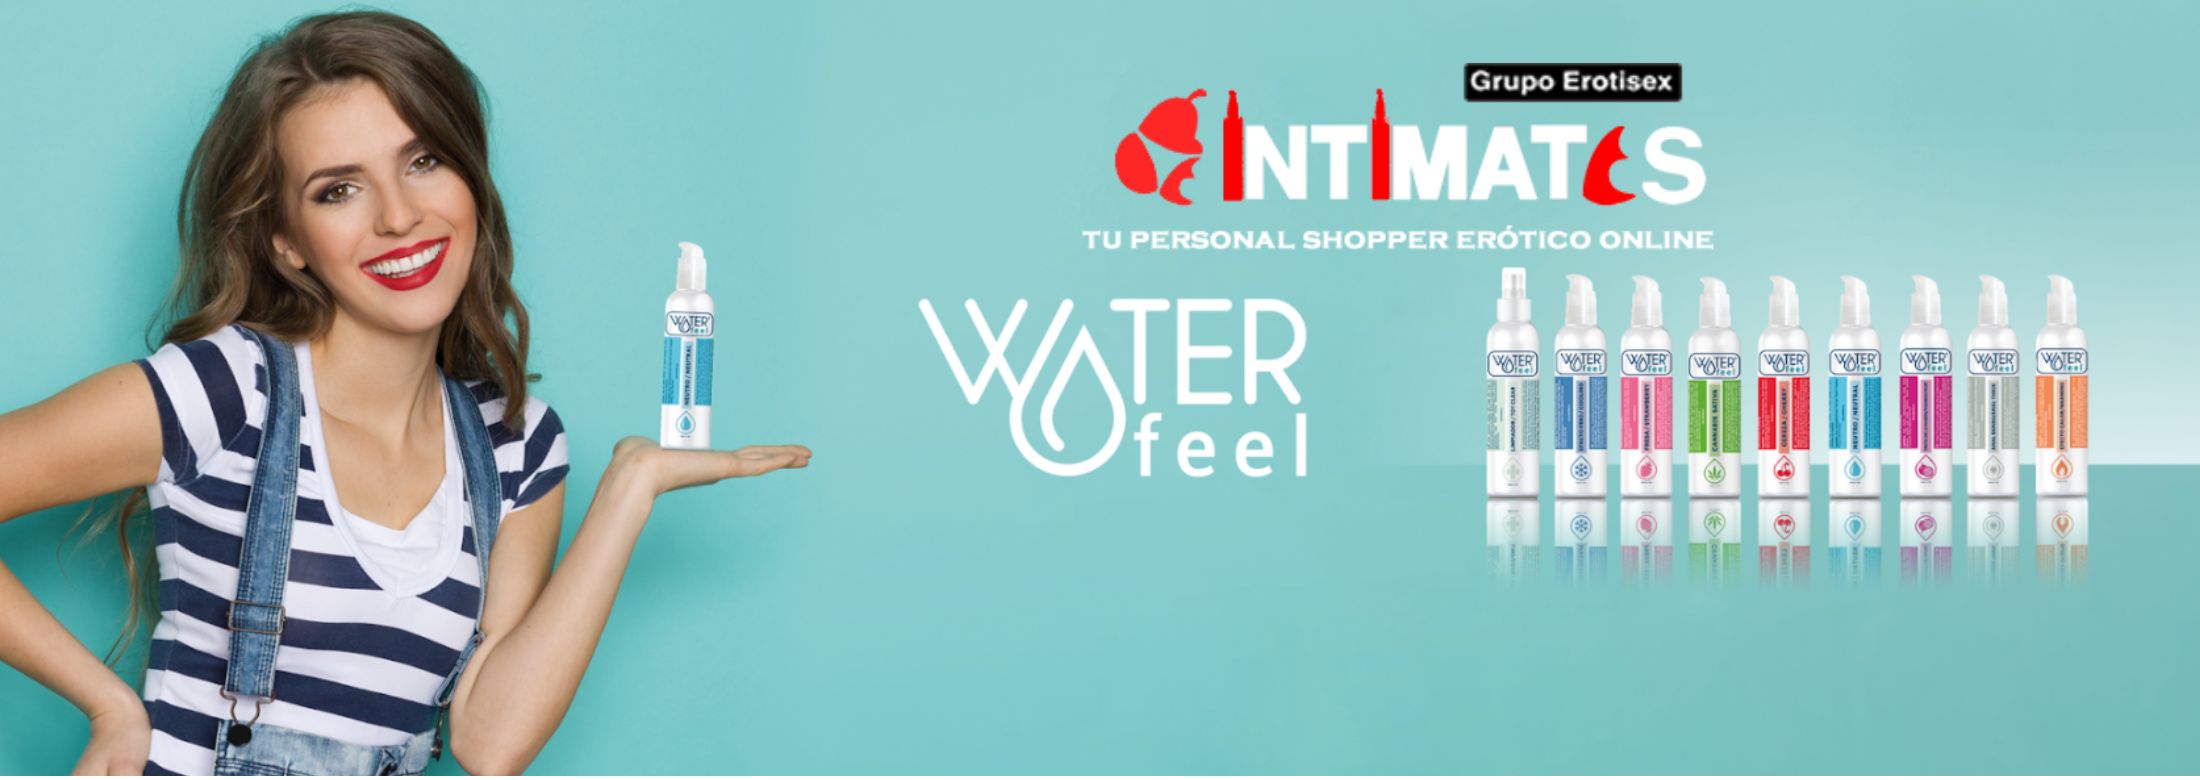 Con los lubricantes Waterfeel®, que puedes adquirir en intimates.es "Tu Personal Shopper Erótico Online", obtendrás calidad.